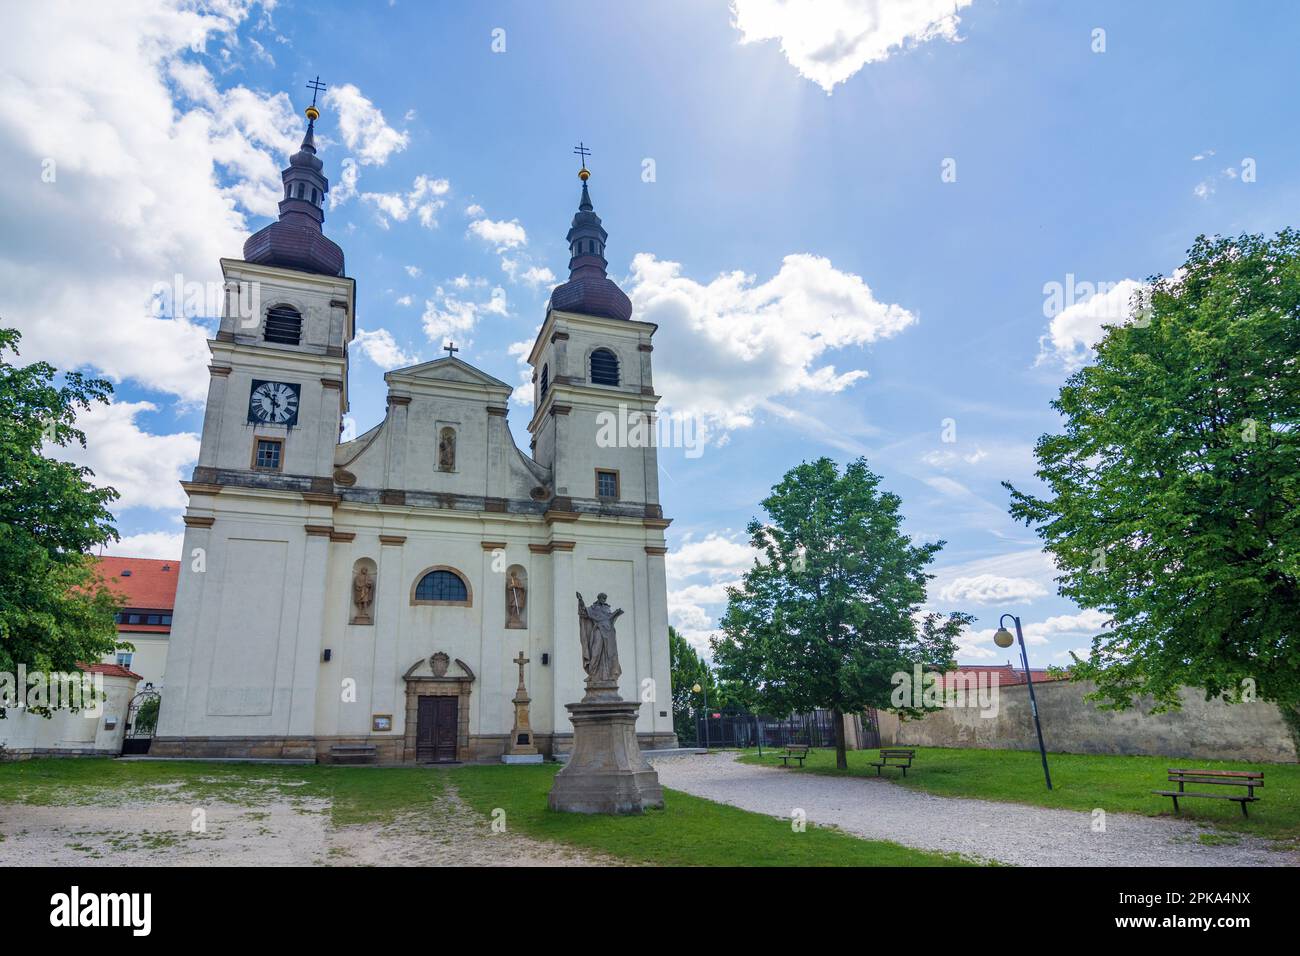 Uhersky Brod (Ungarisch Brod), couvent duminicien avec l'église de l'Assomption de la Vierge Marie à Zlinsky, région de Zlin (région de Zliner), Tchéquie Banque D'Images